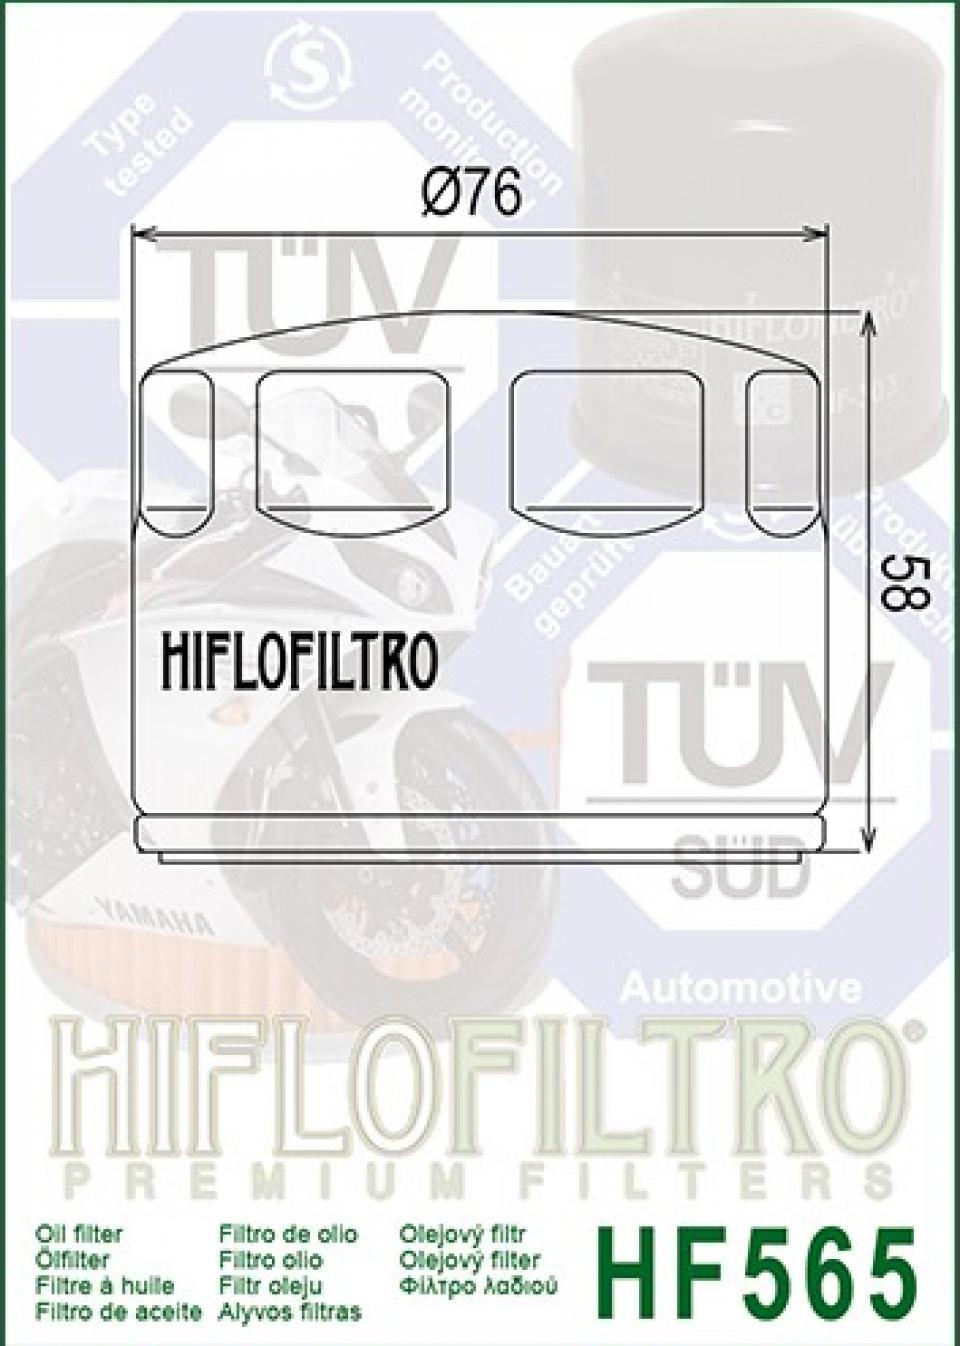 Filtre à huile Hiflo Filtro pour Moto Aprilia 1200 Caponord 2013-2016 Neuf